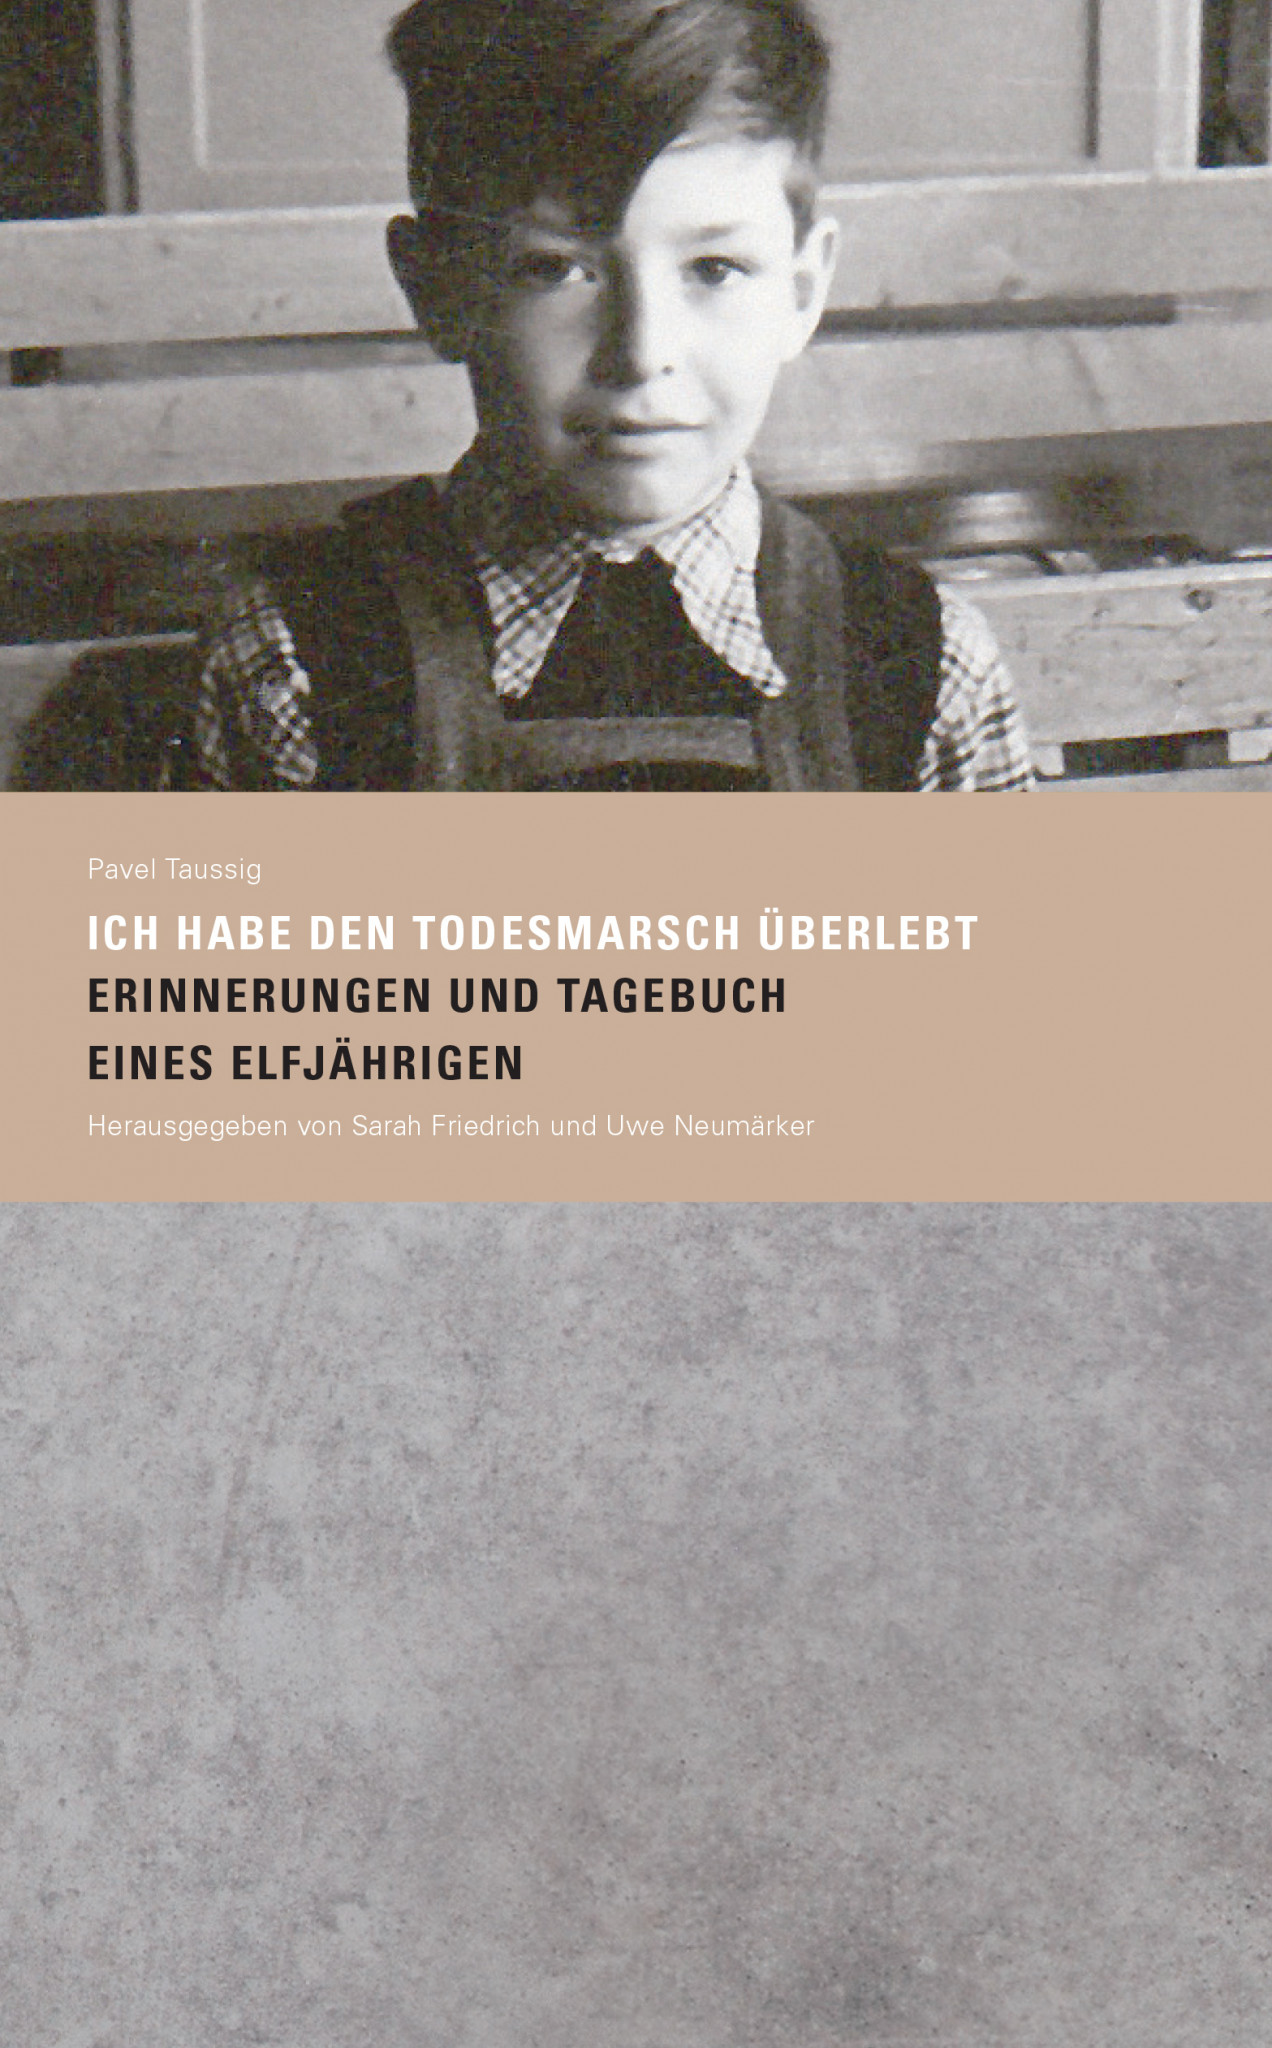 Der Mauritius-Schekel - Hentrich & Hentrich publishing house Berlin